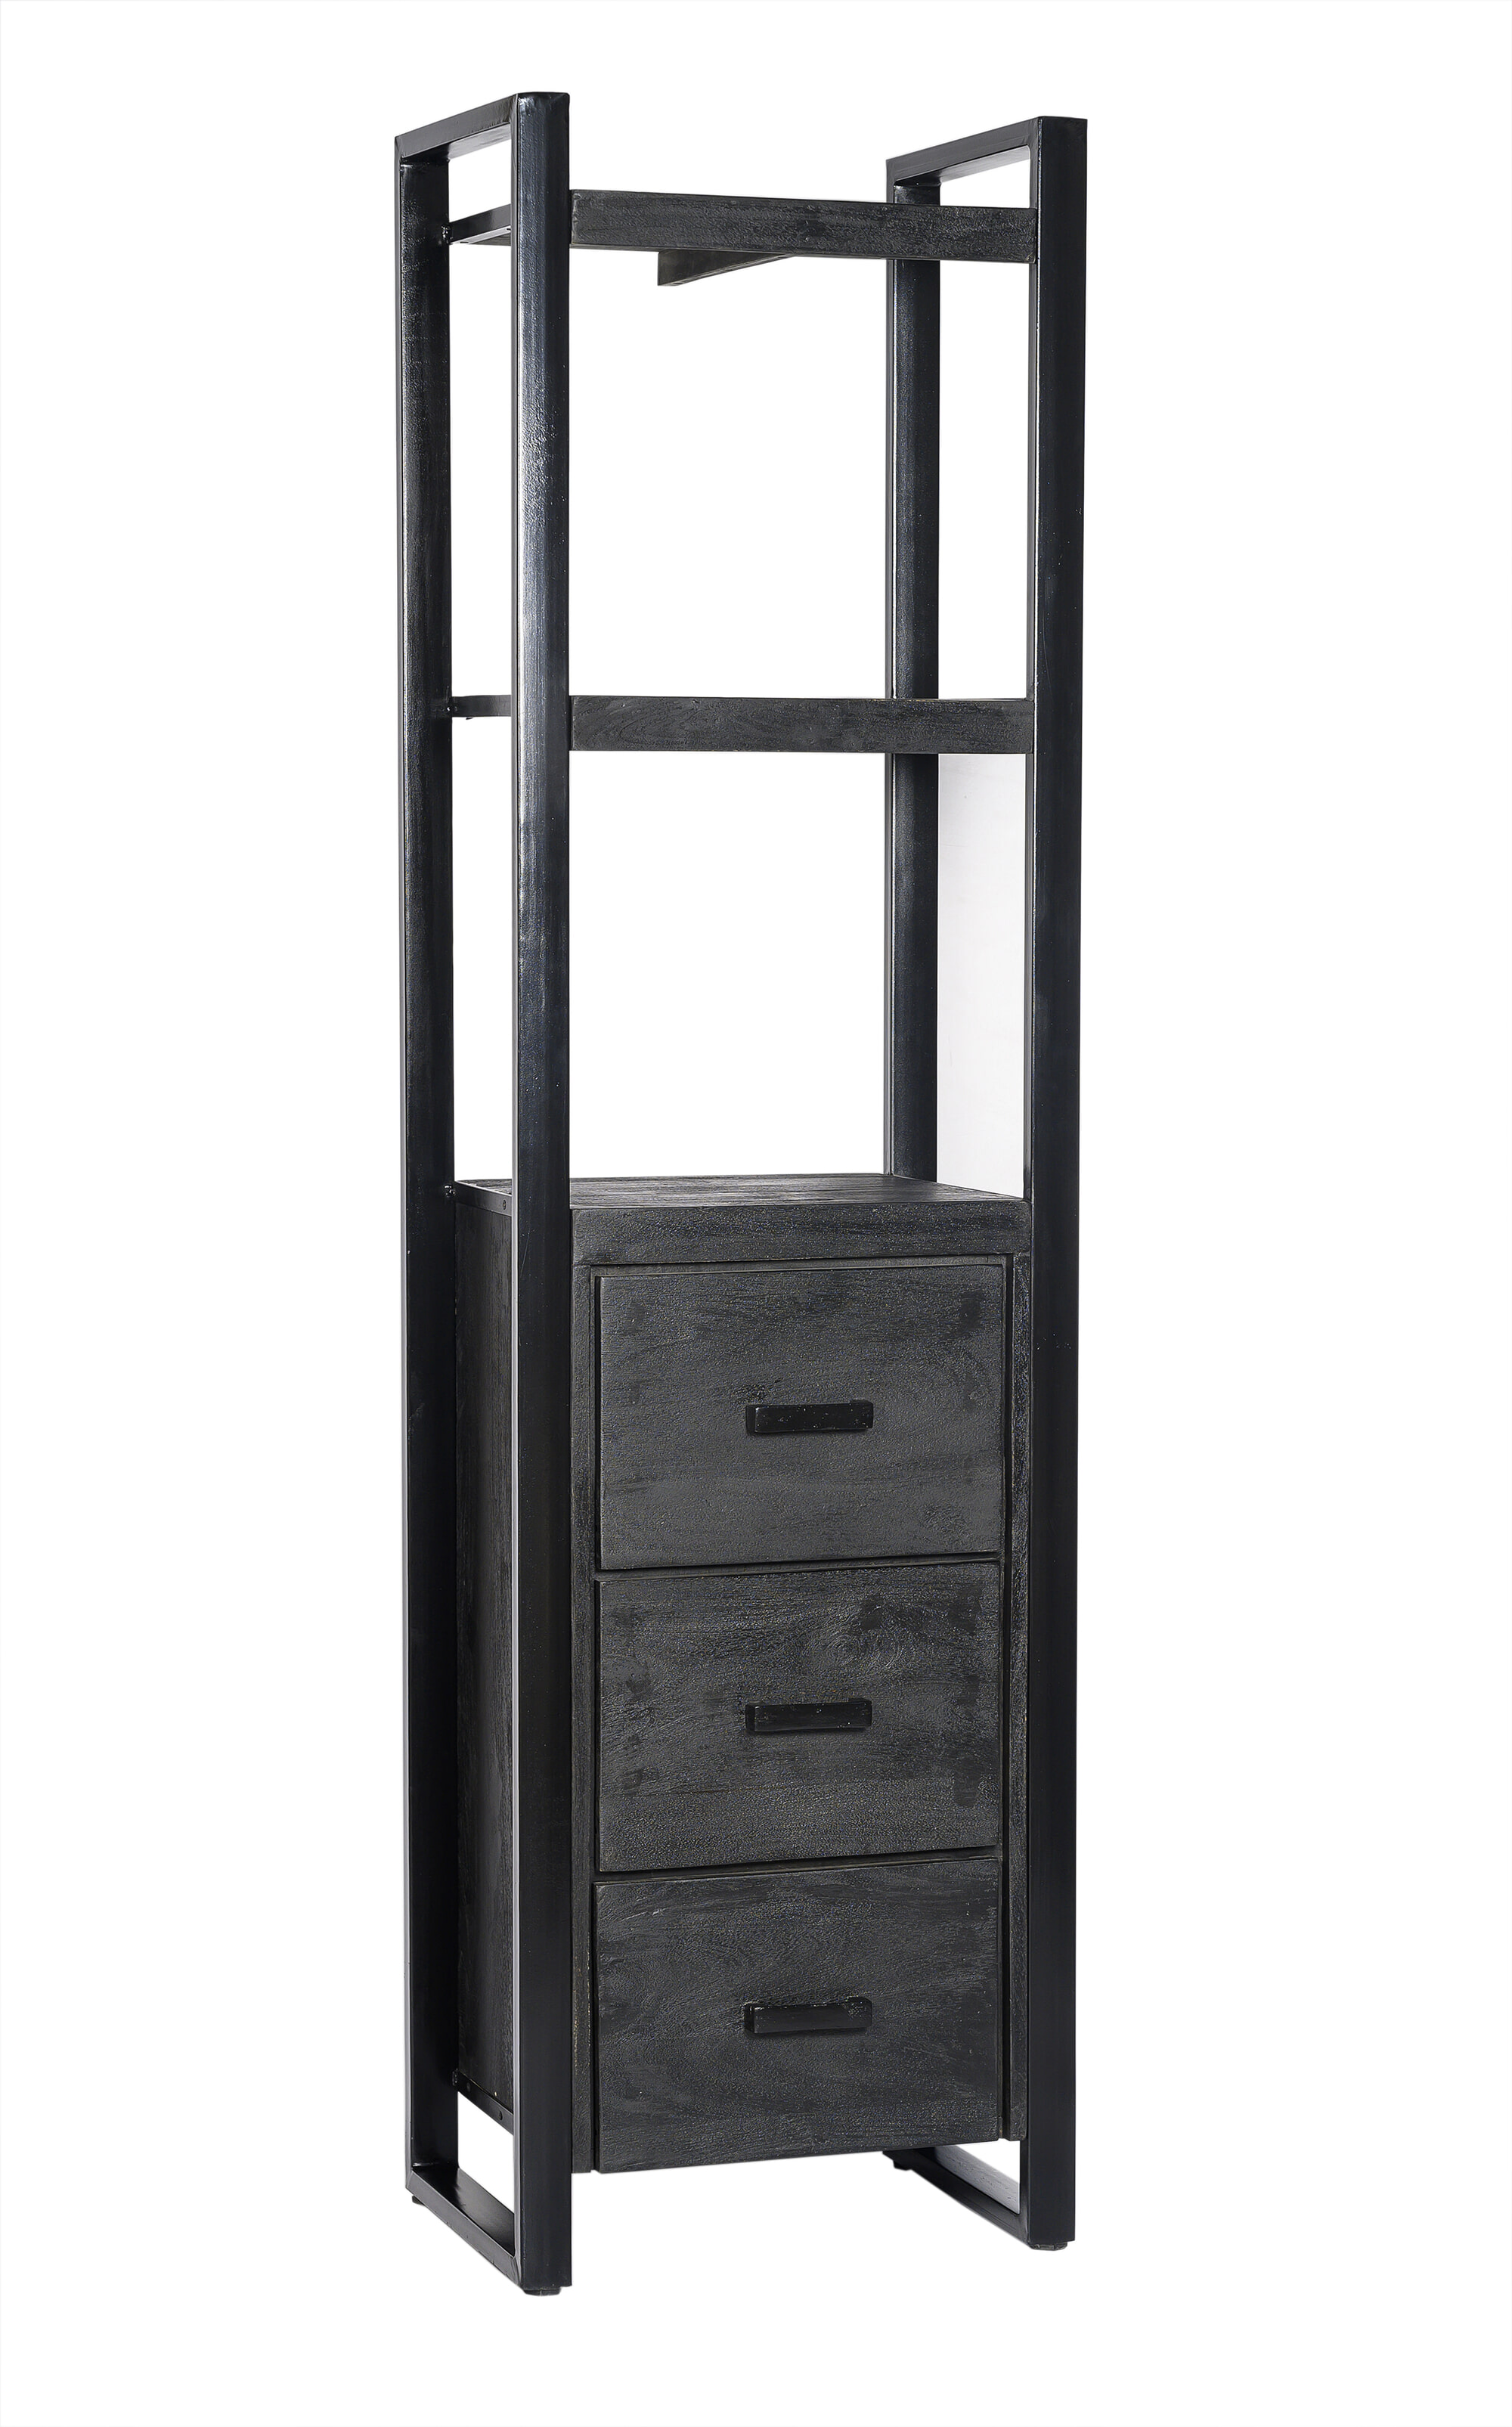 Livingfurn Boekenkast Norris Mangohout en staal, 200 x 55cm - Zwart